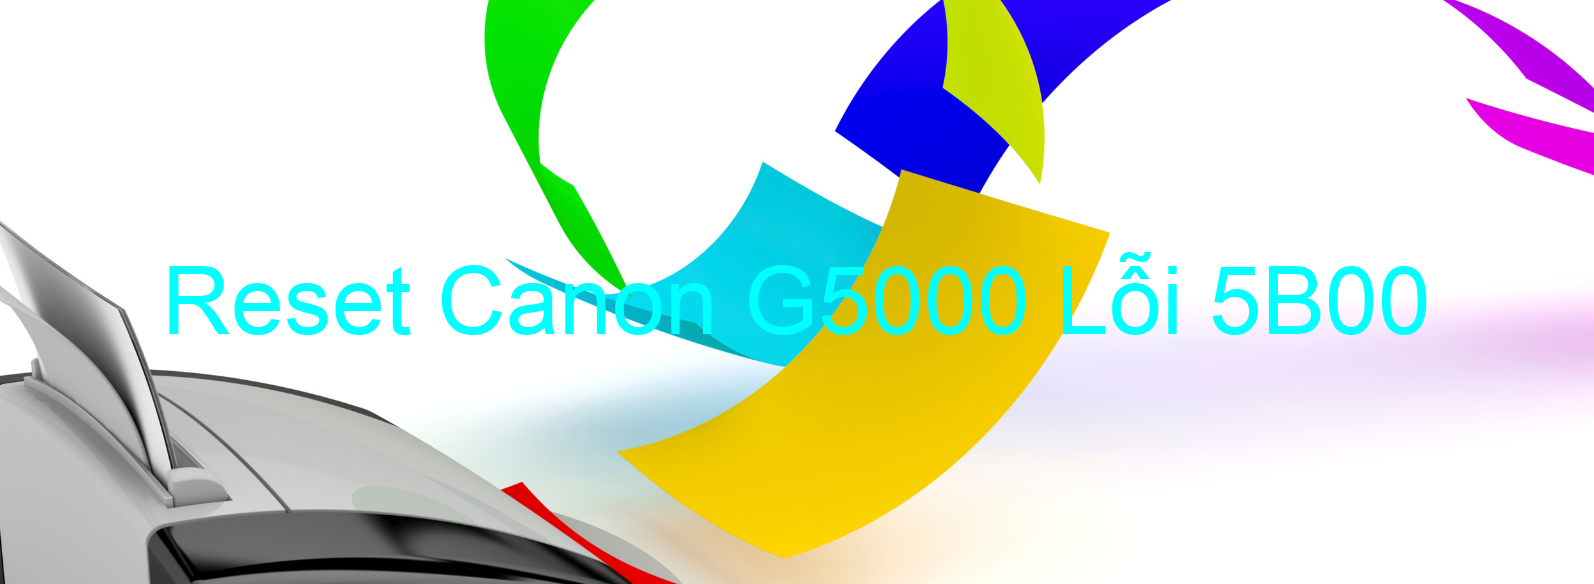 Reset Canon G5000 Lỗi 5B00